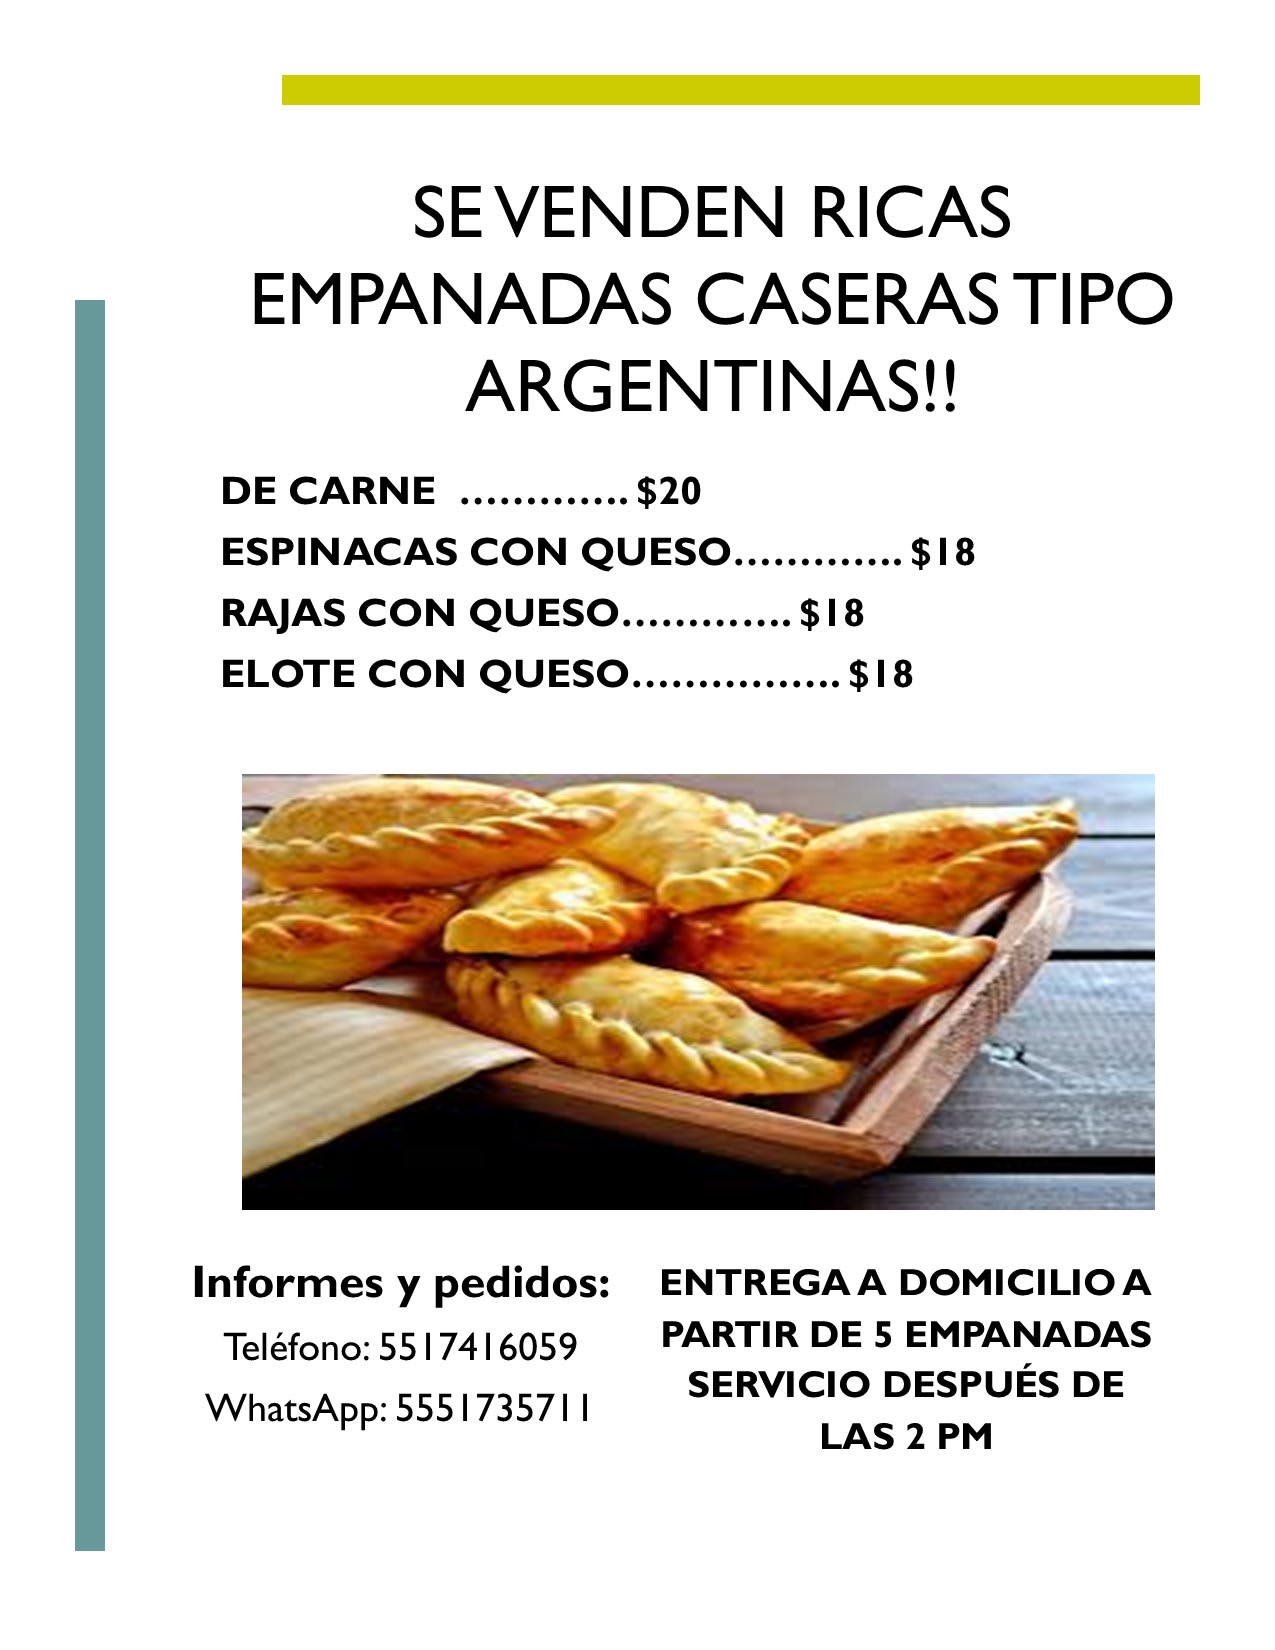 Elote con Queso - Menú - Empanadas Argentinas Caseras - Comida a domicilio  | CDMX